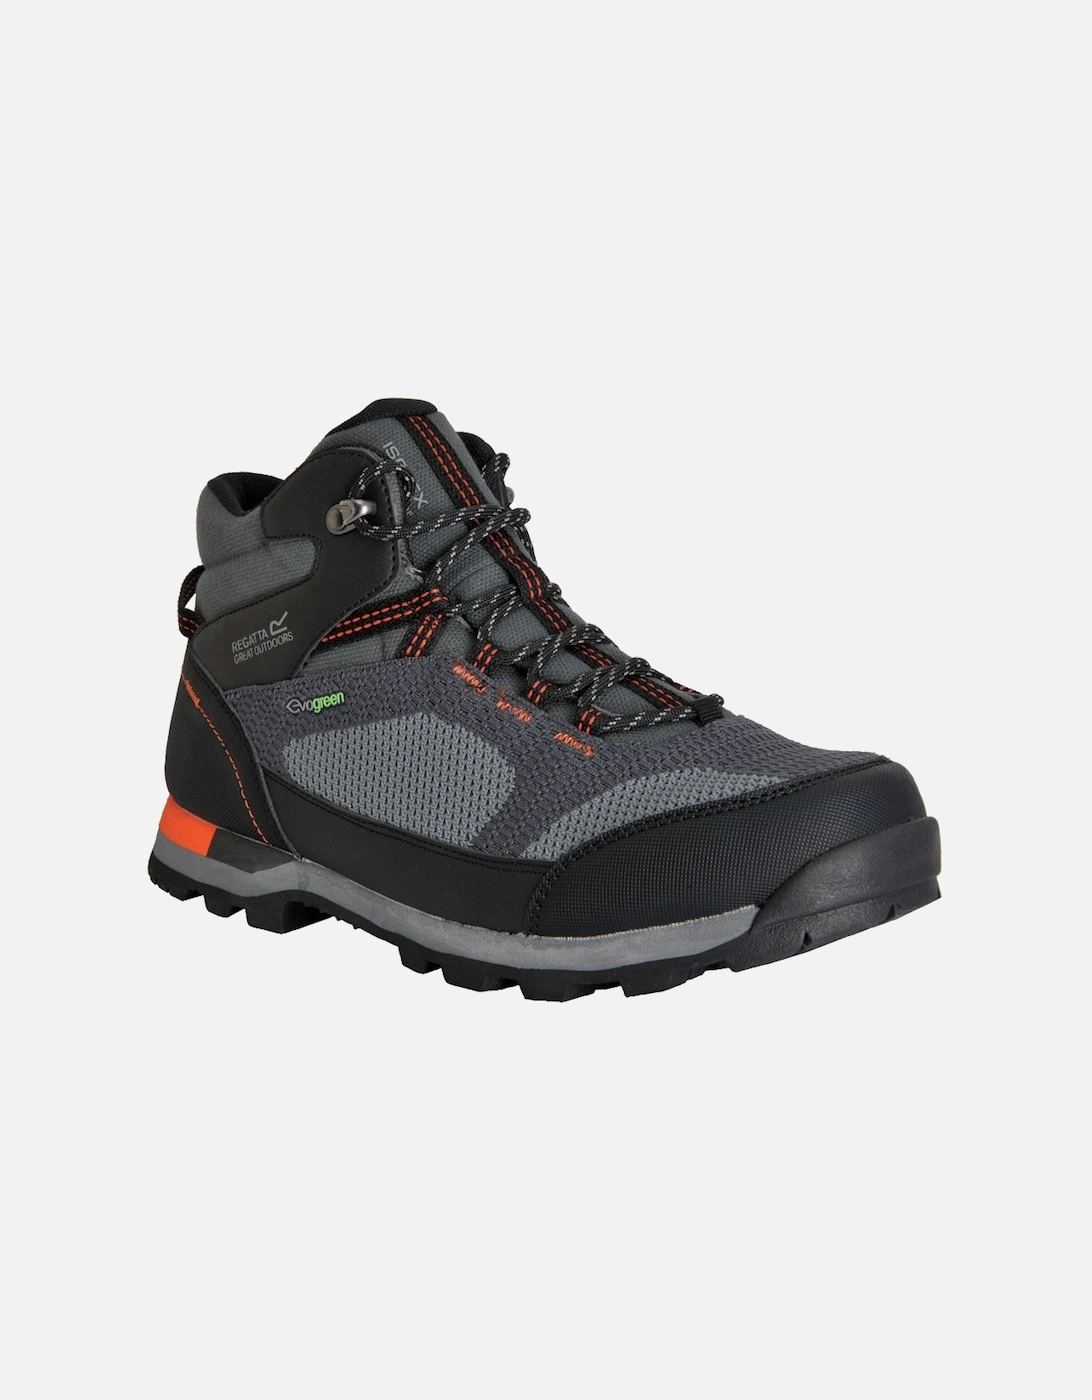 Mens Blackthorn Evo Waterproof Walking Boots, 2 of 1